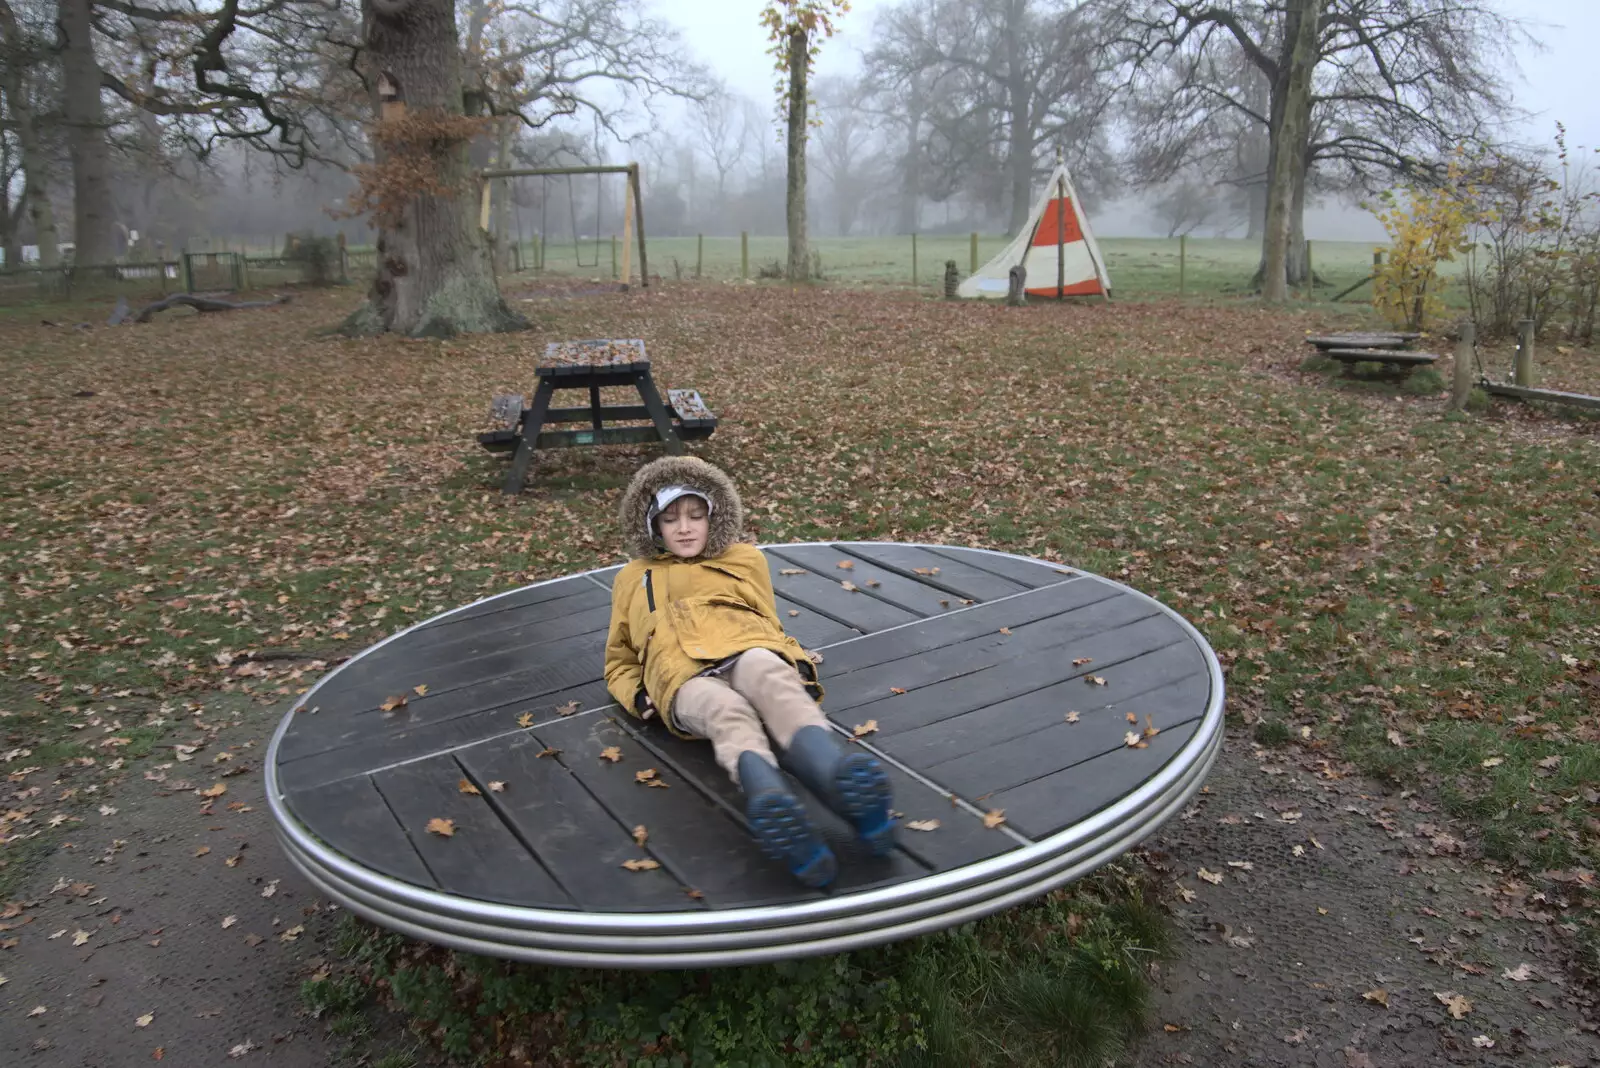 Harry has a spin around in the playground, from A Return to Thornham Walks, Thornham, Suffolk - 19th December 2021